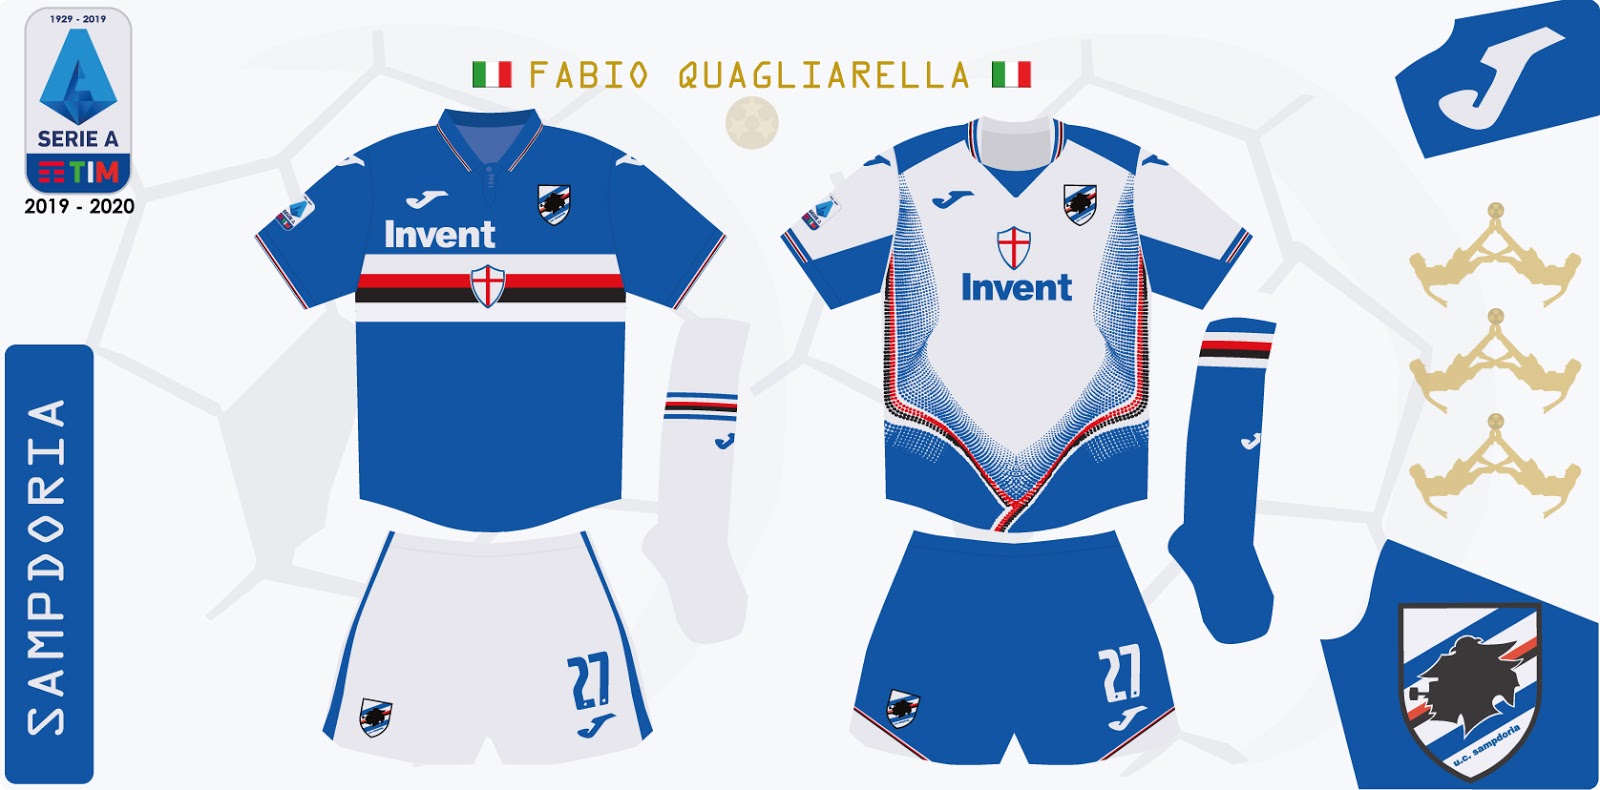 Vuelo textura Voluntario Design Futbol Kits: Sampdoria 2019 - 2020 (Serie A)